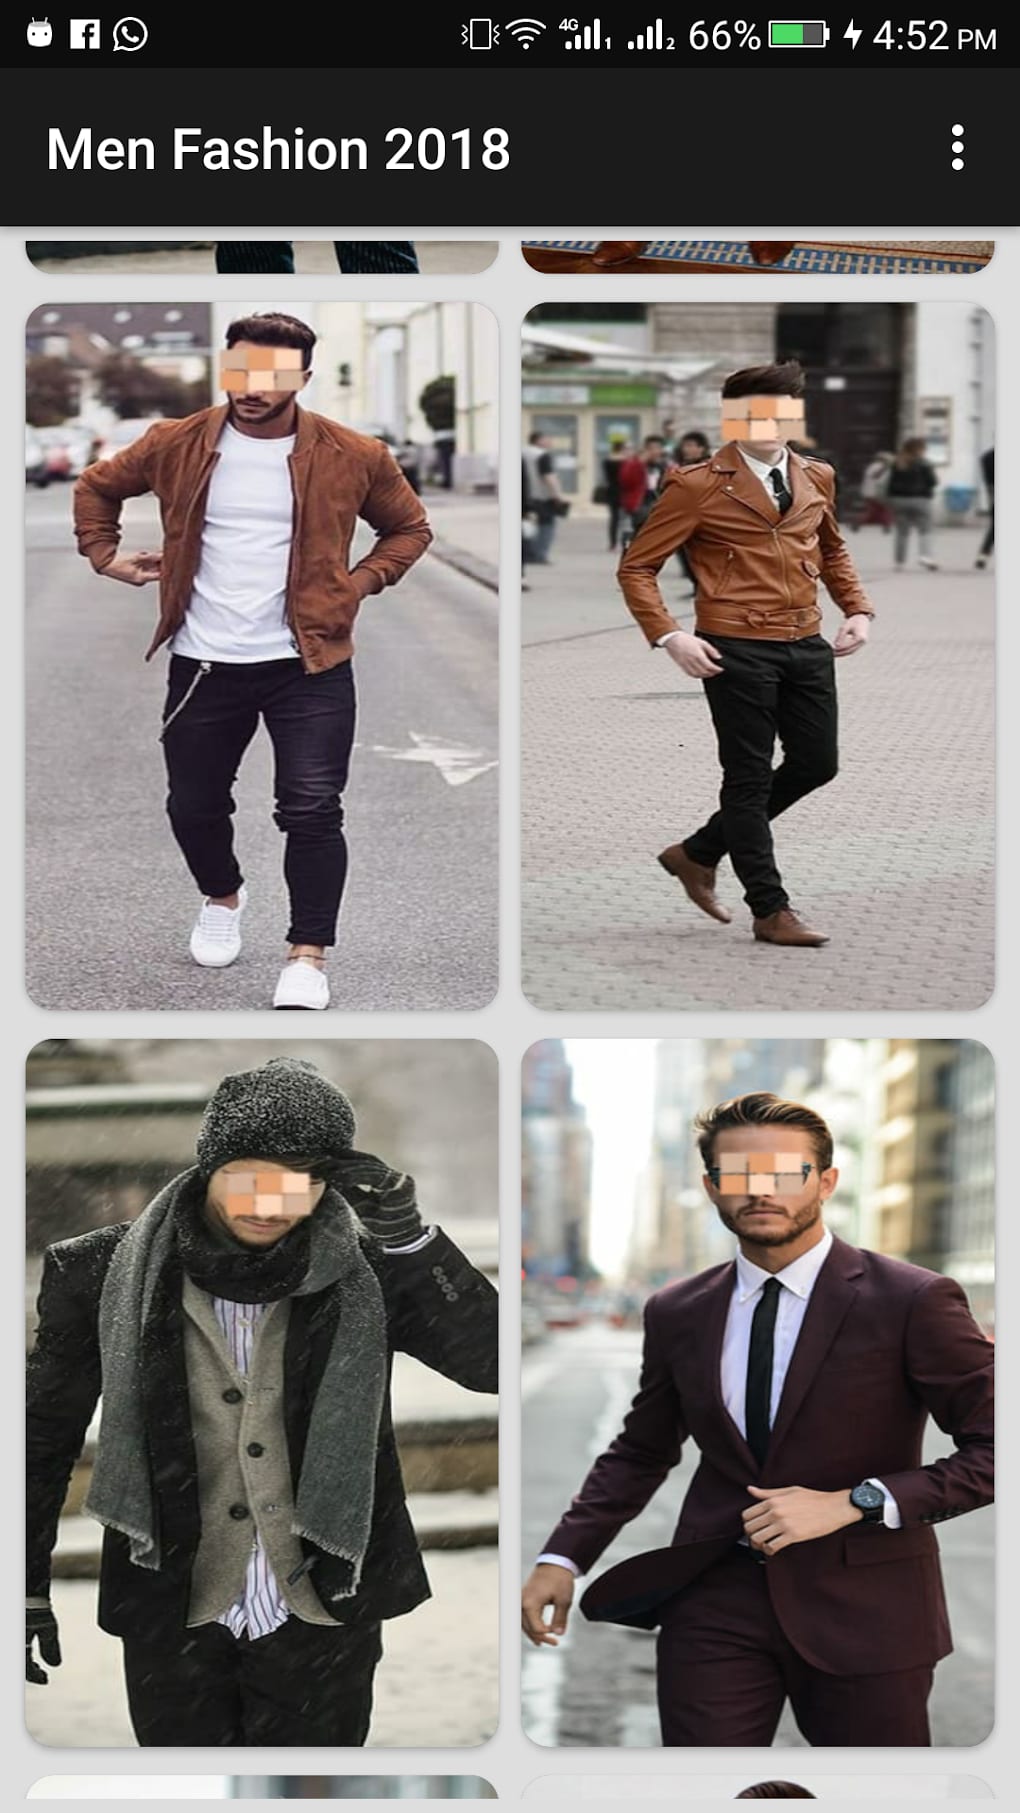 Men's Fashion | Men's Clothes, Shoes & Accessories | Primark